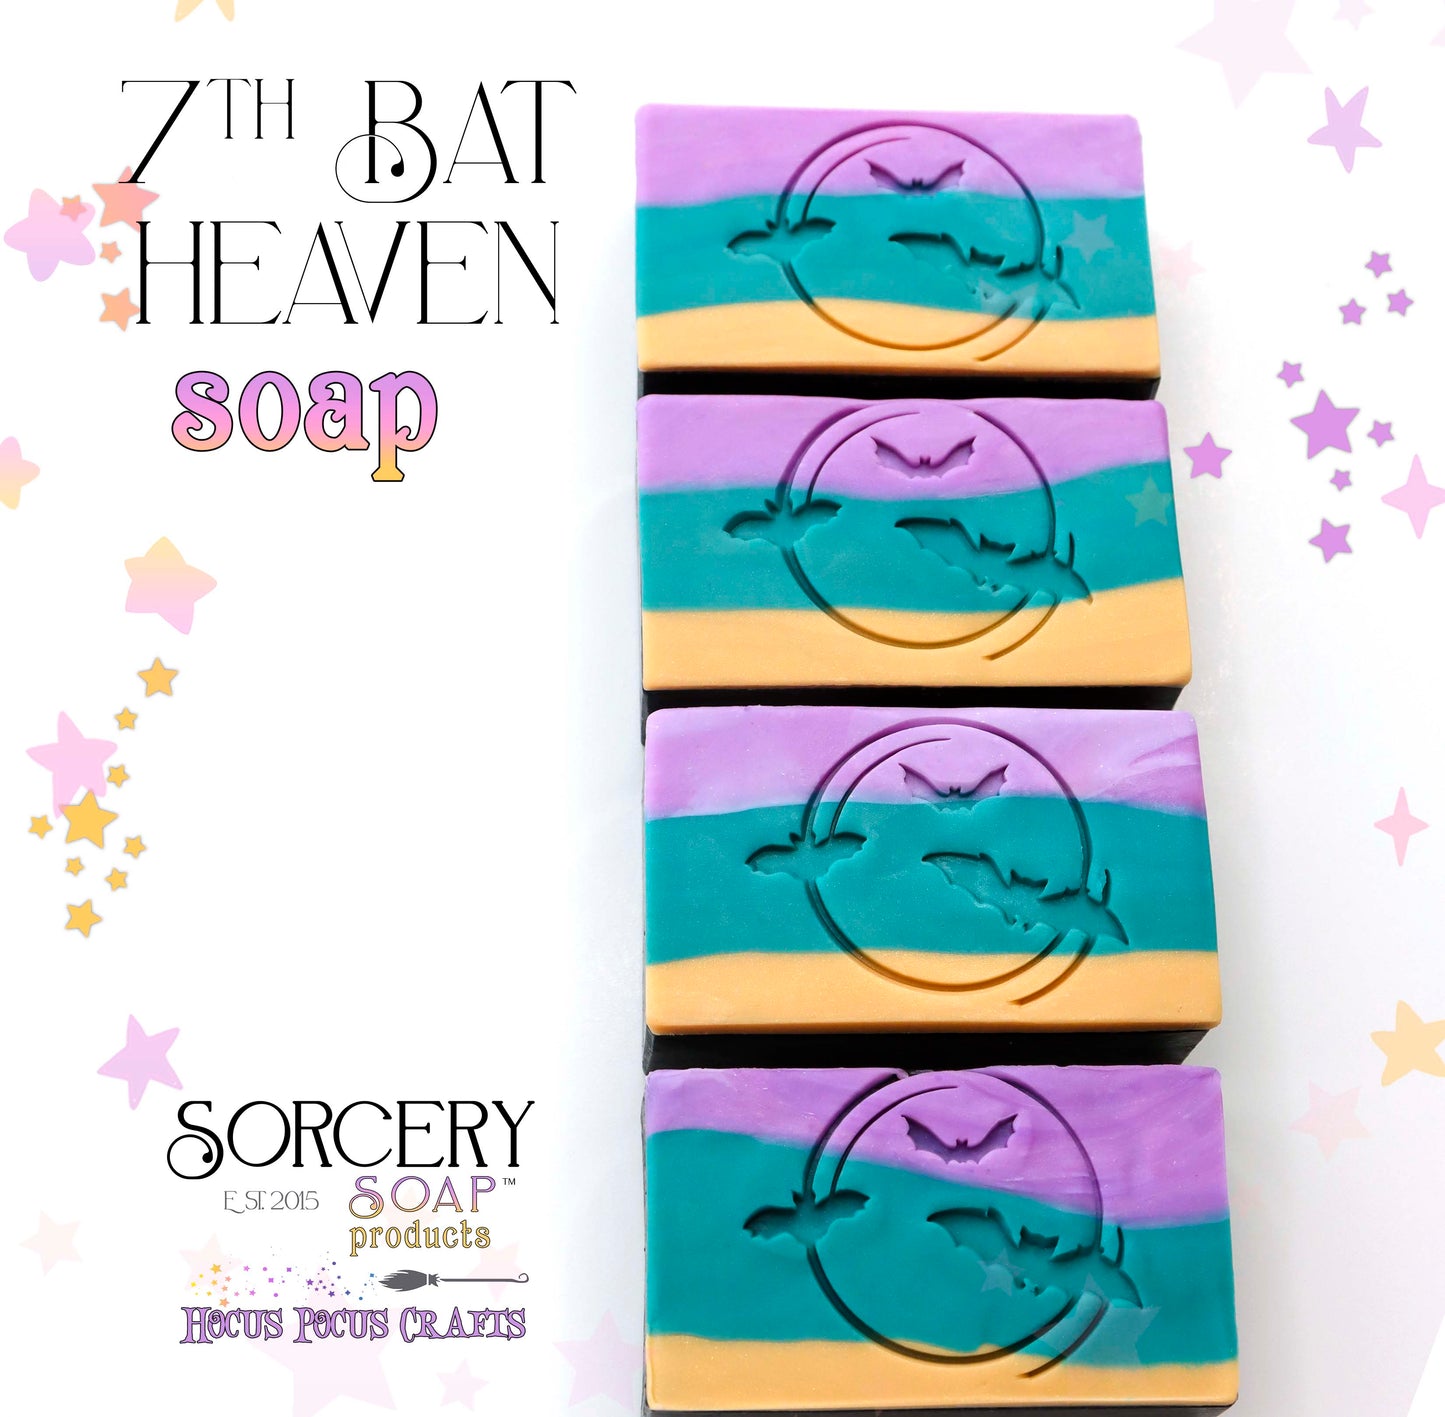 Seventh Bat Heaven Soap